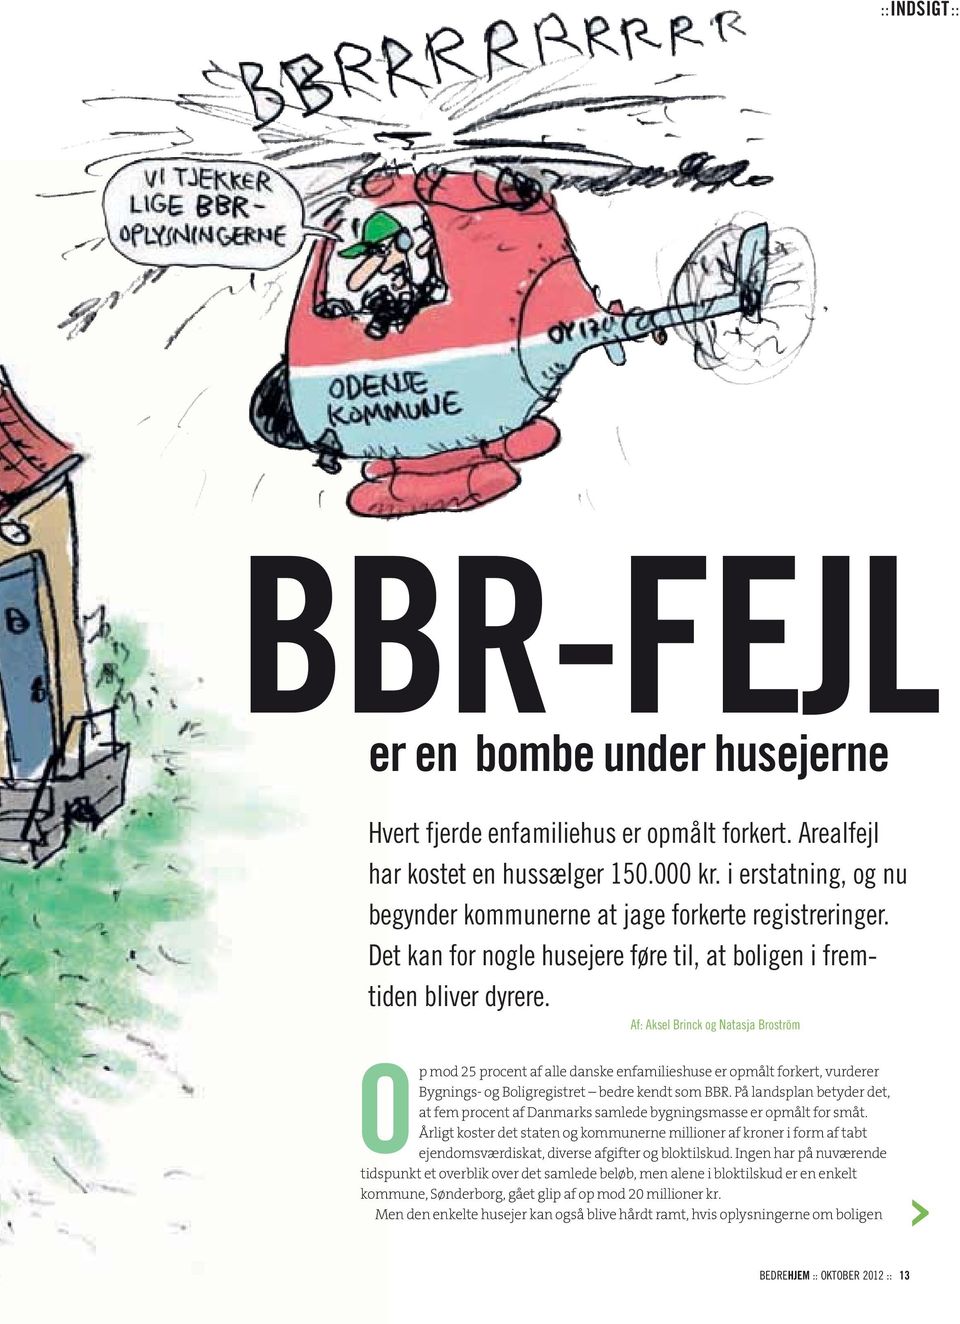 Af: Aksel Brinck og Natasja Broström Op mod 25 procent af alle danske enfamilieshuse er opmålt forkert, vurderer Bygnings- og Boligregistret bedre kendt som BBR.